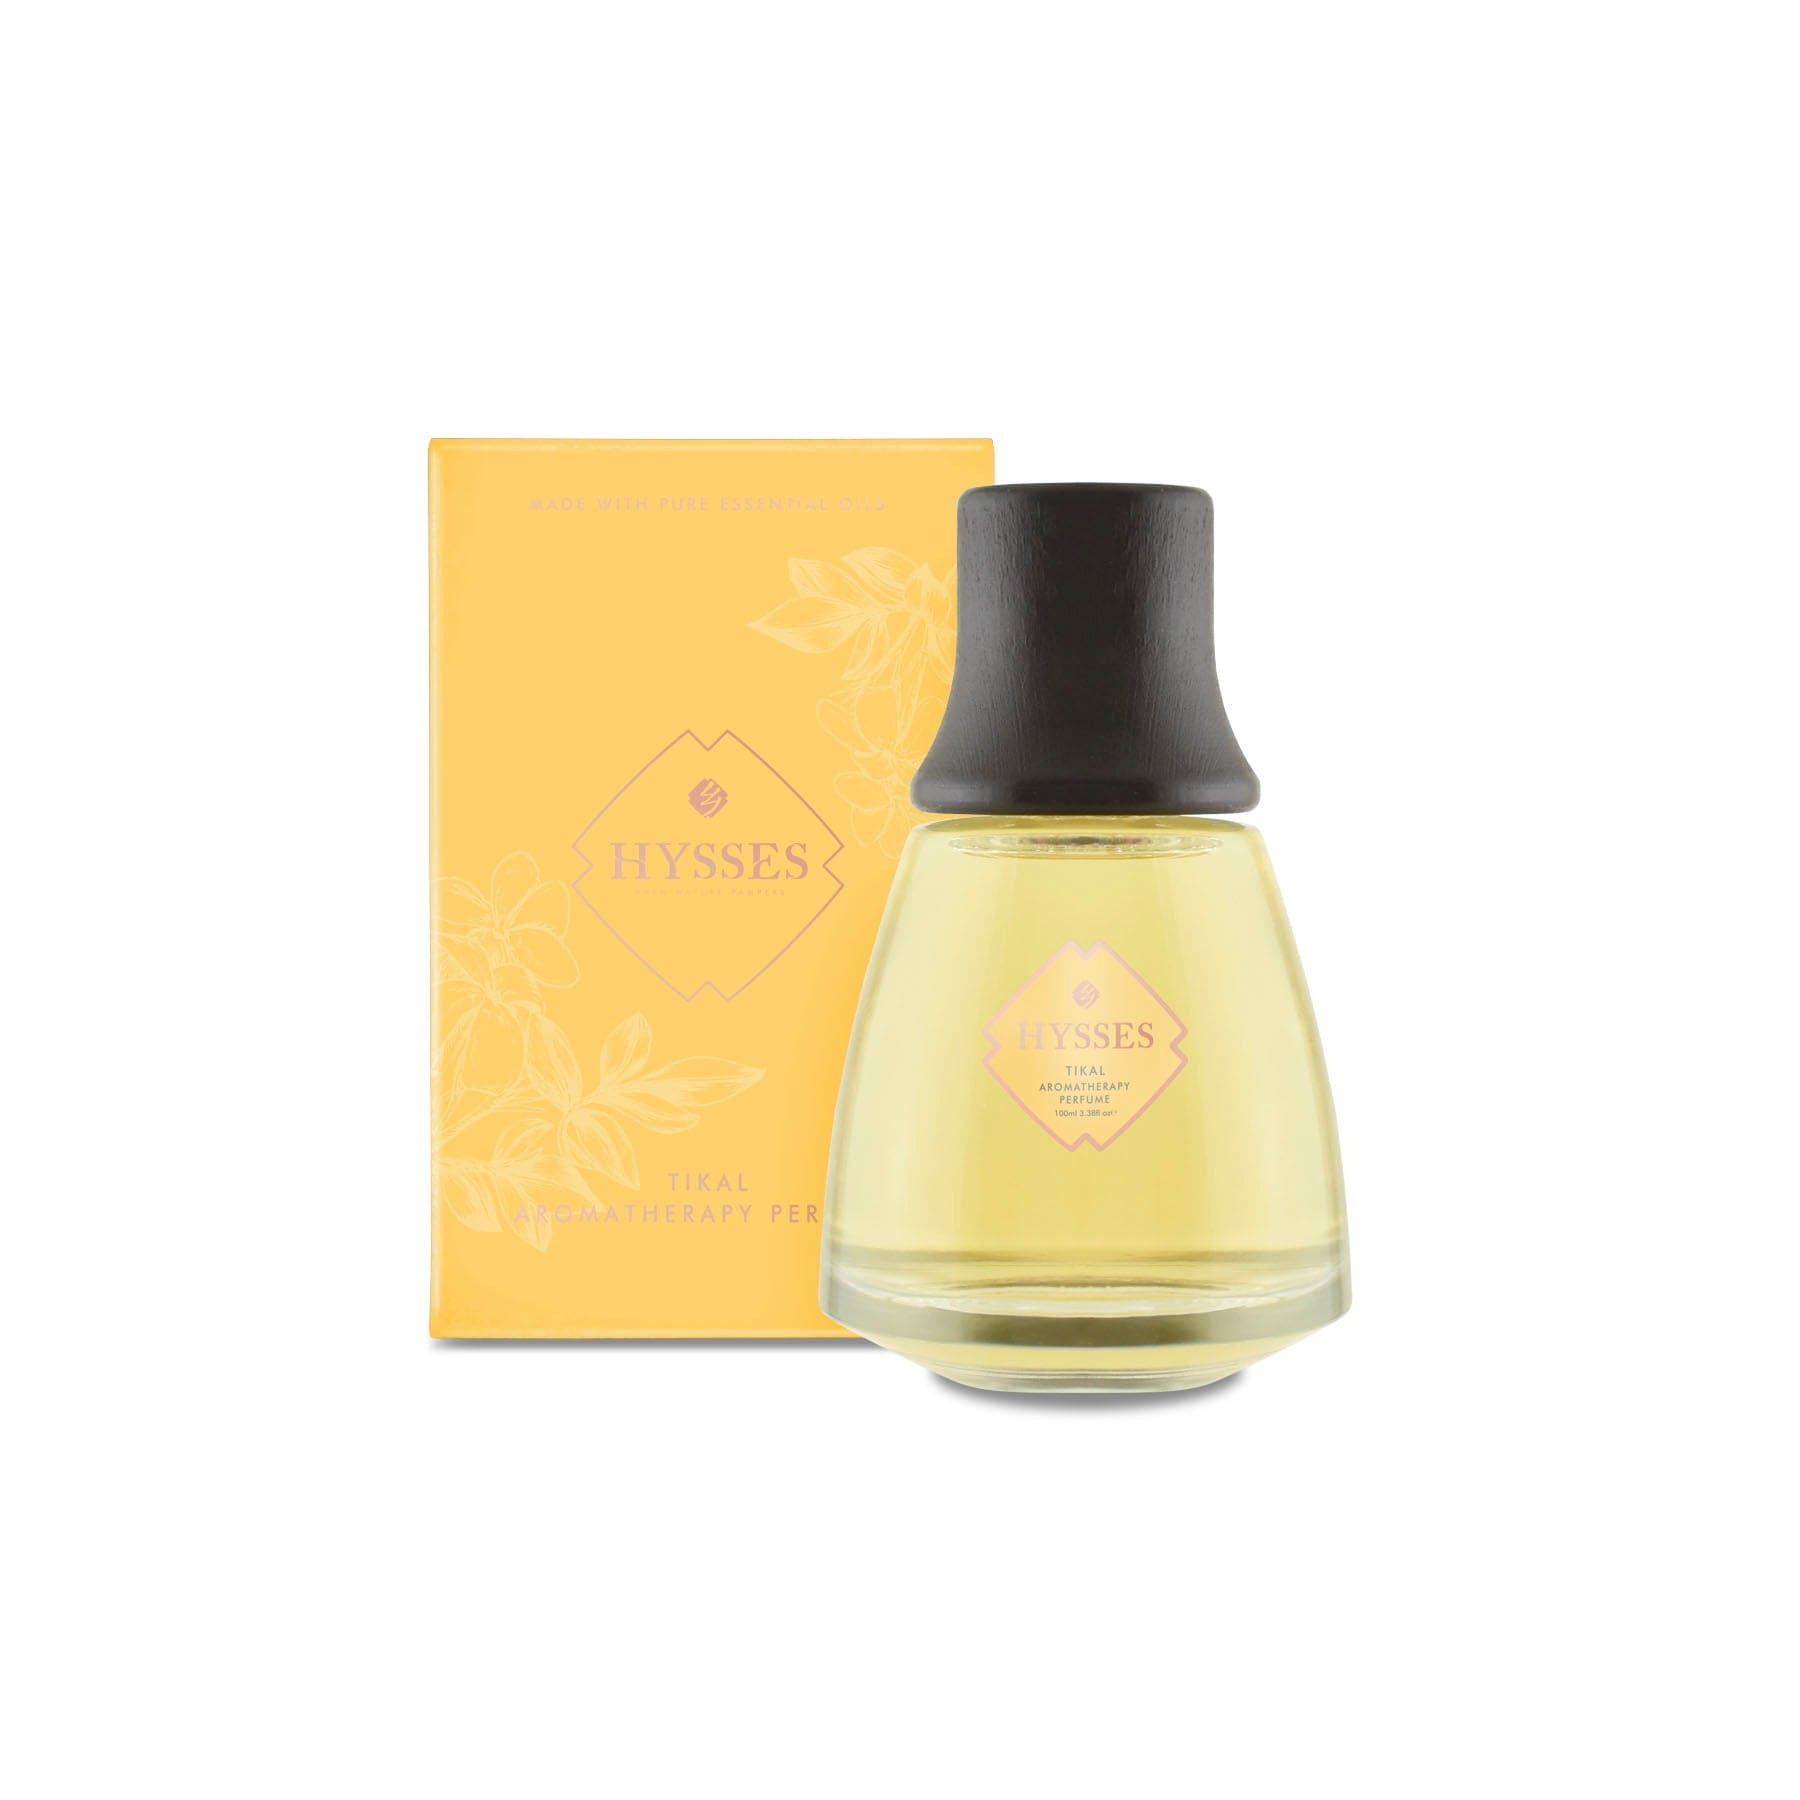 HYSSES Perfume Aromatherapy Perfume, Tikal PS37